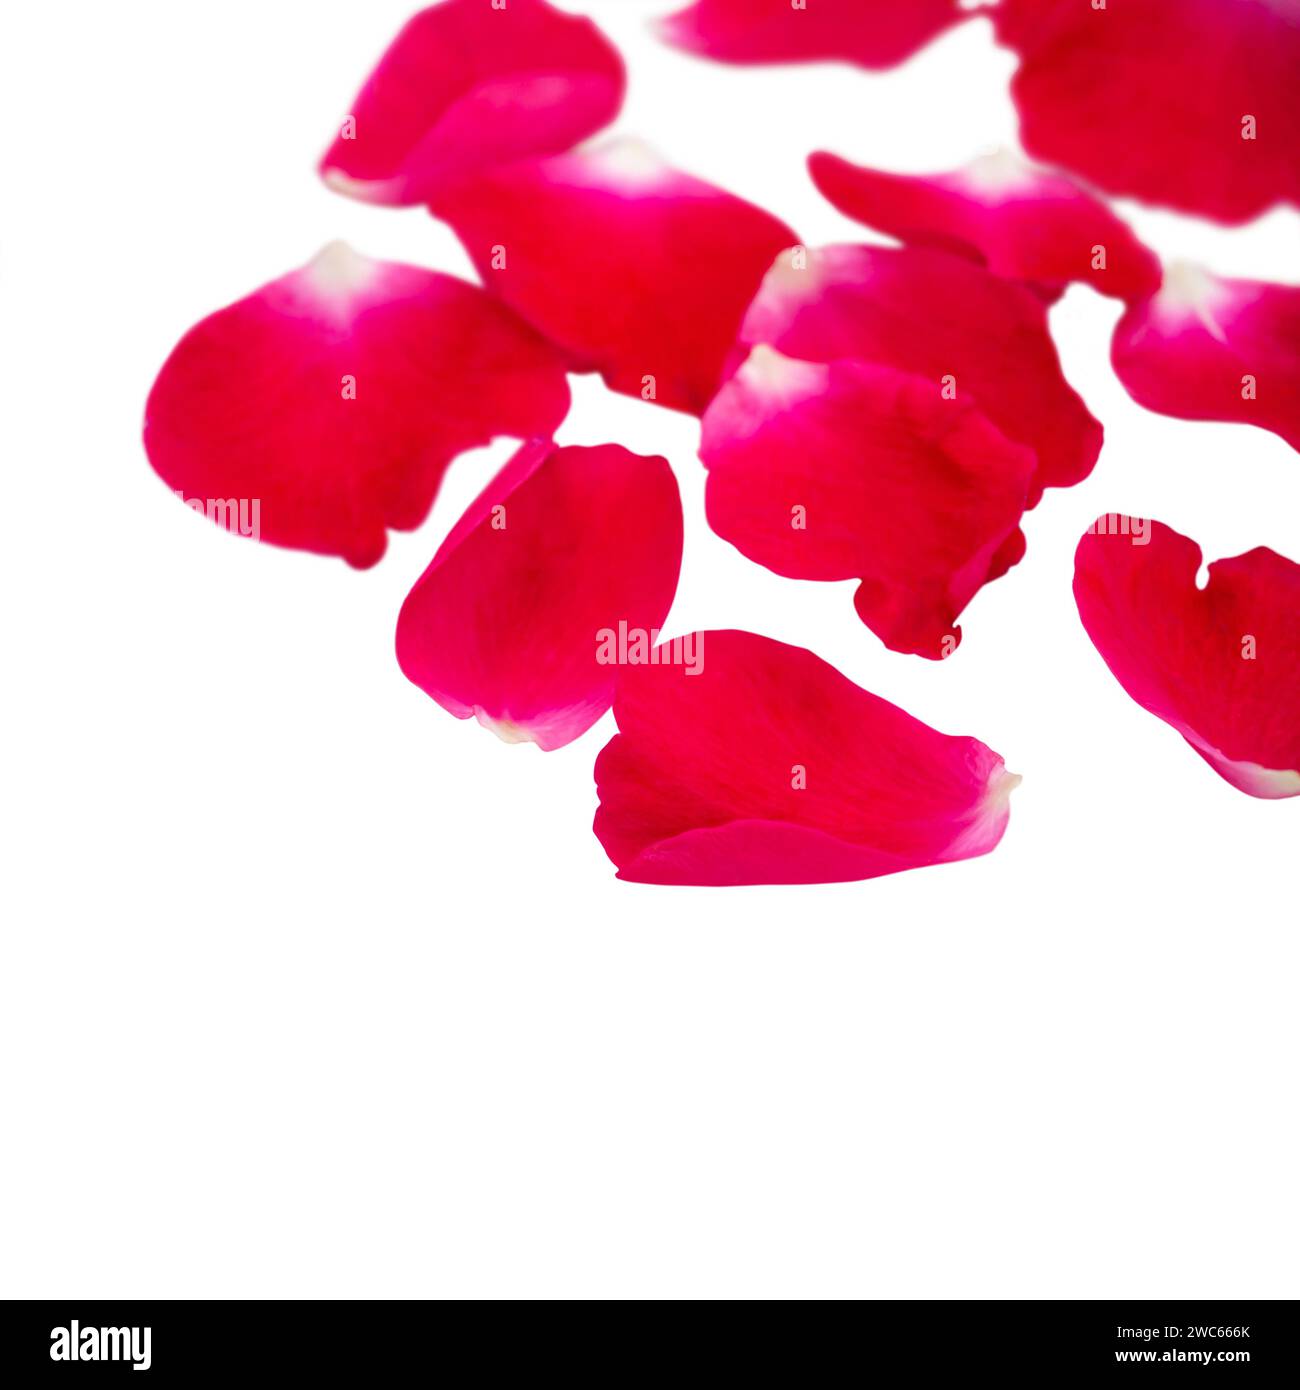 Pétalos de rosa rojo montón aislado en blanco. Shallow Focus.Flower tarjeta de regalo para el día de San Valentín. Amor, cariño y pasión romántica floral borrosa Foto de stock